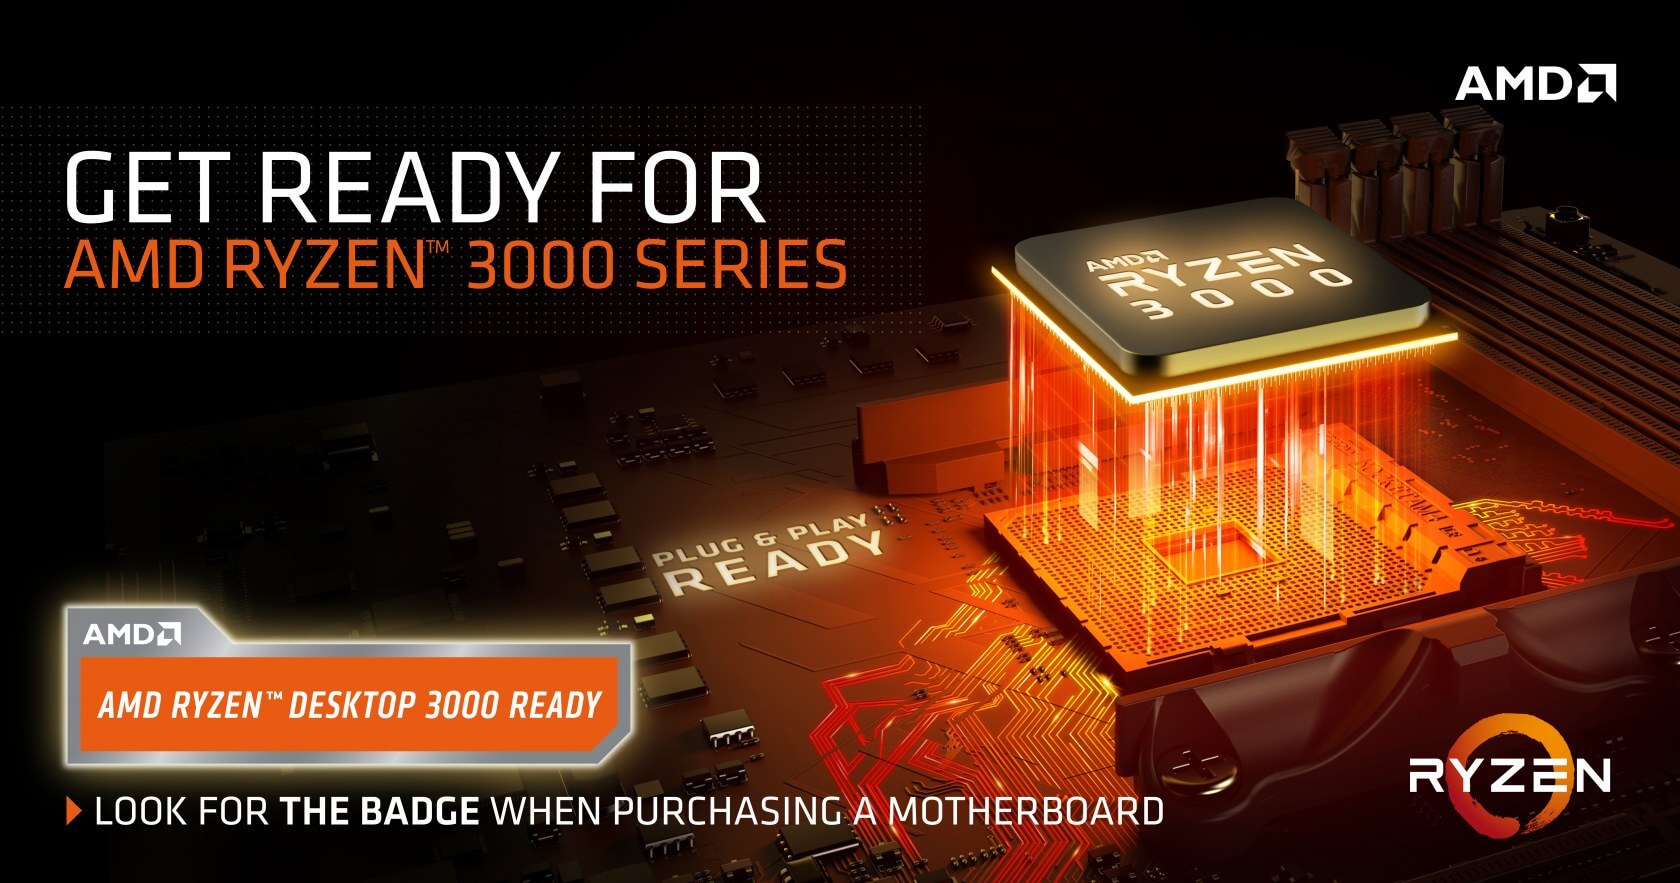 AMD's X570 chipset won't support first-generation Ryzen